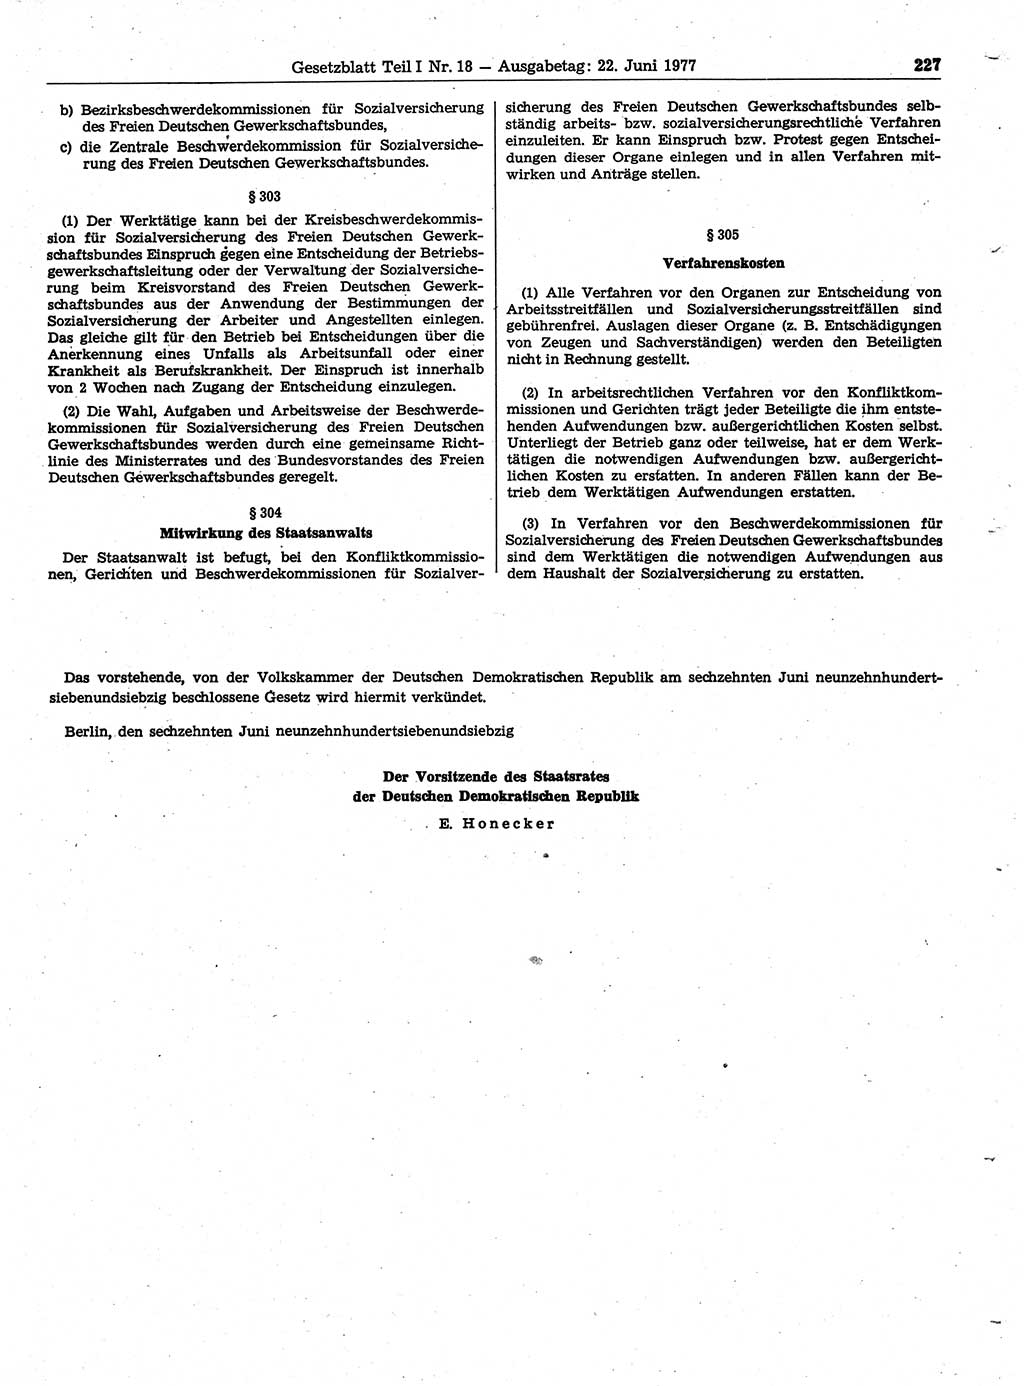 Gesetzblatt (GBl.) der Deutschen Demokratischen Republik (DDR) Teil Ⅰ 1977, Seite 227 (GBl. DDR Ⅰ 1977, S. 227)